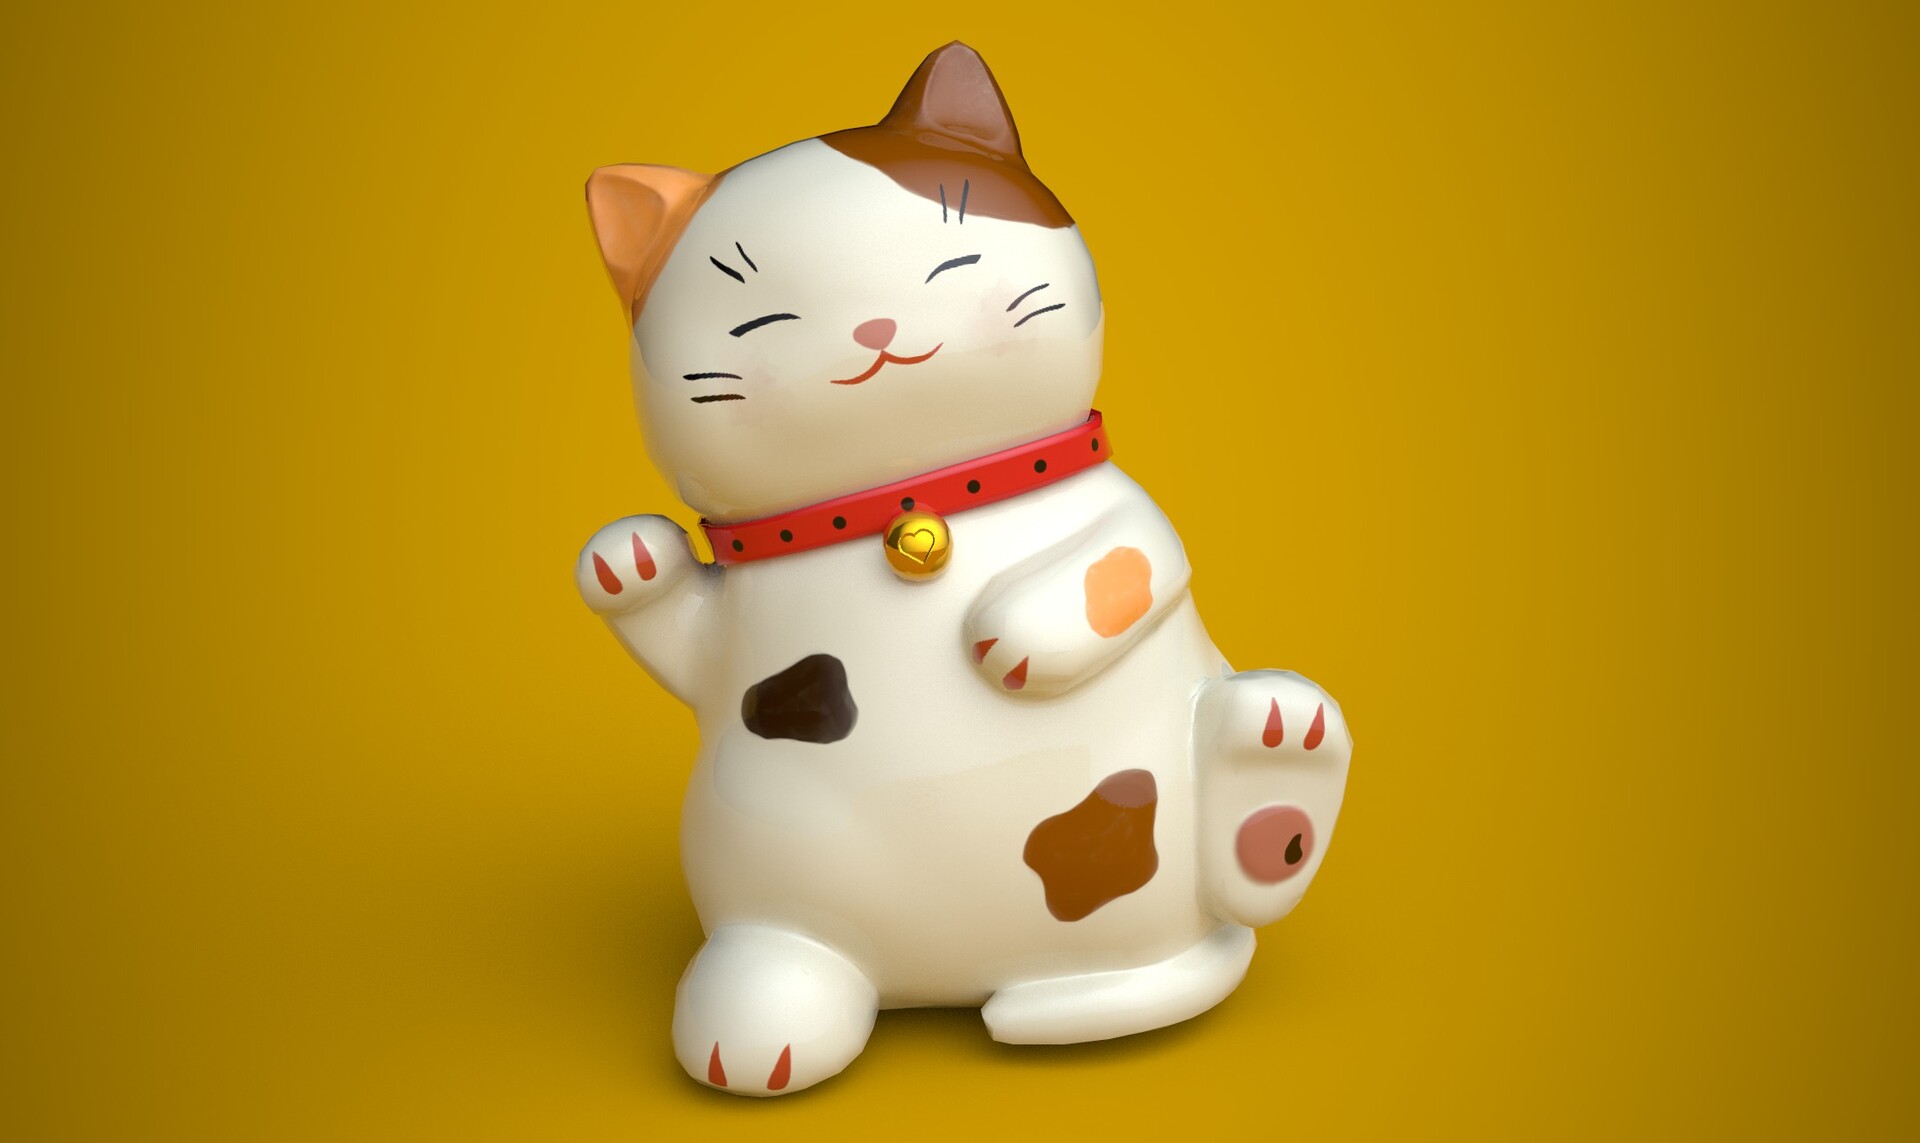 ArtStation - Maneki Neko - Maneki Neko (loài mèo may mắn trong văn hóa Nhật Bản): Maneki Neko là tên gọi của loài mèo may mắn trong văn hóa Nhật Bản. Nếu bạn yêu thích nghệ thuật và muốn tìm hiểu về văn hóa Nhật Bản, hãy ghé thăm trang Artstation và tìm hiểu về bộ sưu tập Maneki Neko. Với những bức vẽ và ấn phẩm đẹp mắt này, bạn sẽ được ngắm nhìn vẻ đẹp của nghệ thuật cổ điển Nhật Bản, cùng với thông điệp về sự thành công và may mắn.